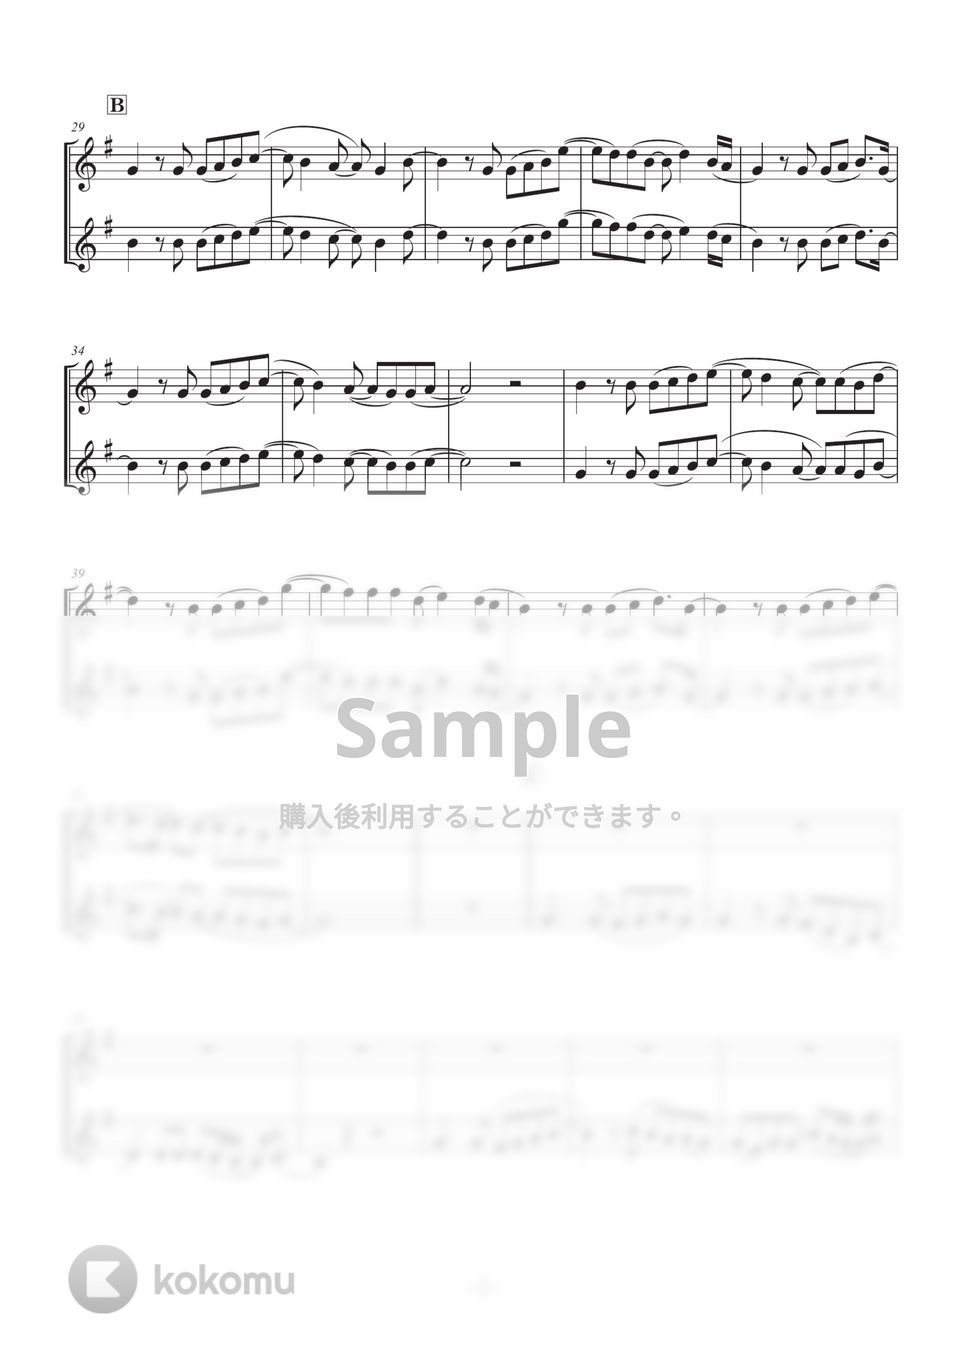 あいみょん - 桜が降る夜は (クラリネット二重奏) by SHUN&NANA Daily Clarinets!